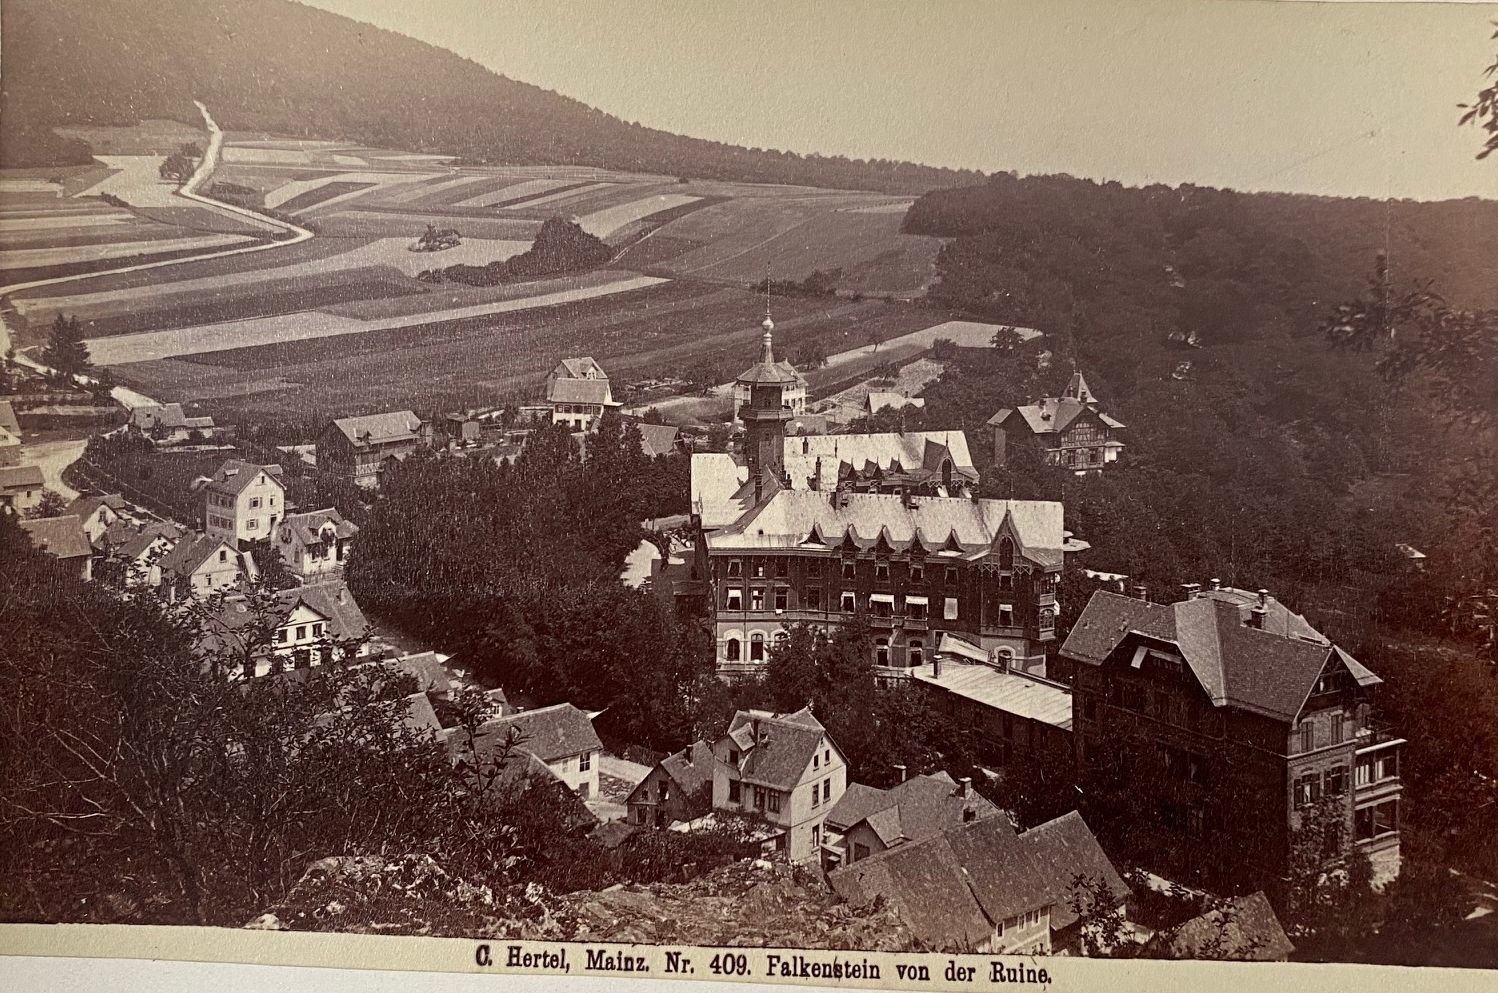 Fotografie, Carl Hertel No. 409, Falkenstein von der Ruine, ca. 1885 (Taunus-Rhein-Main - Regionalgeschichtliche Sammlung Dr. Stefan Naas CC BY-NC-SA)